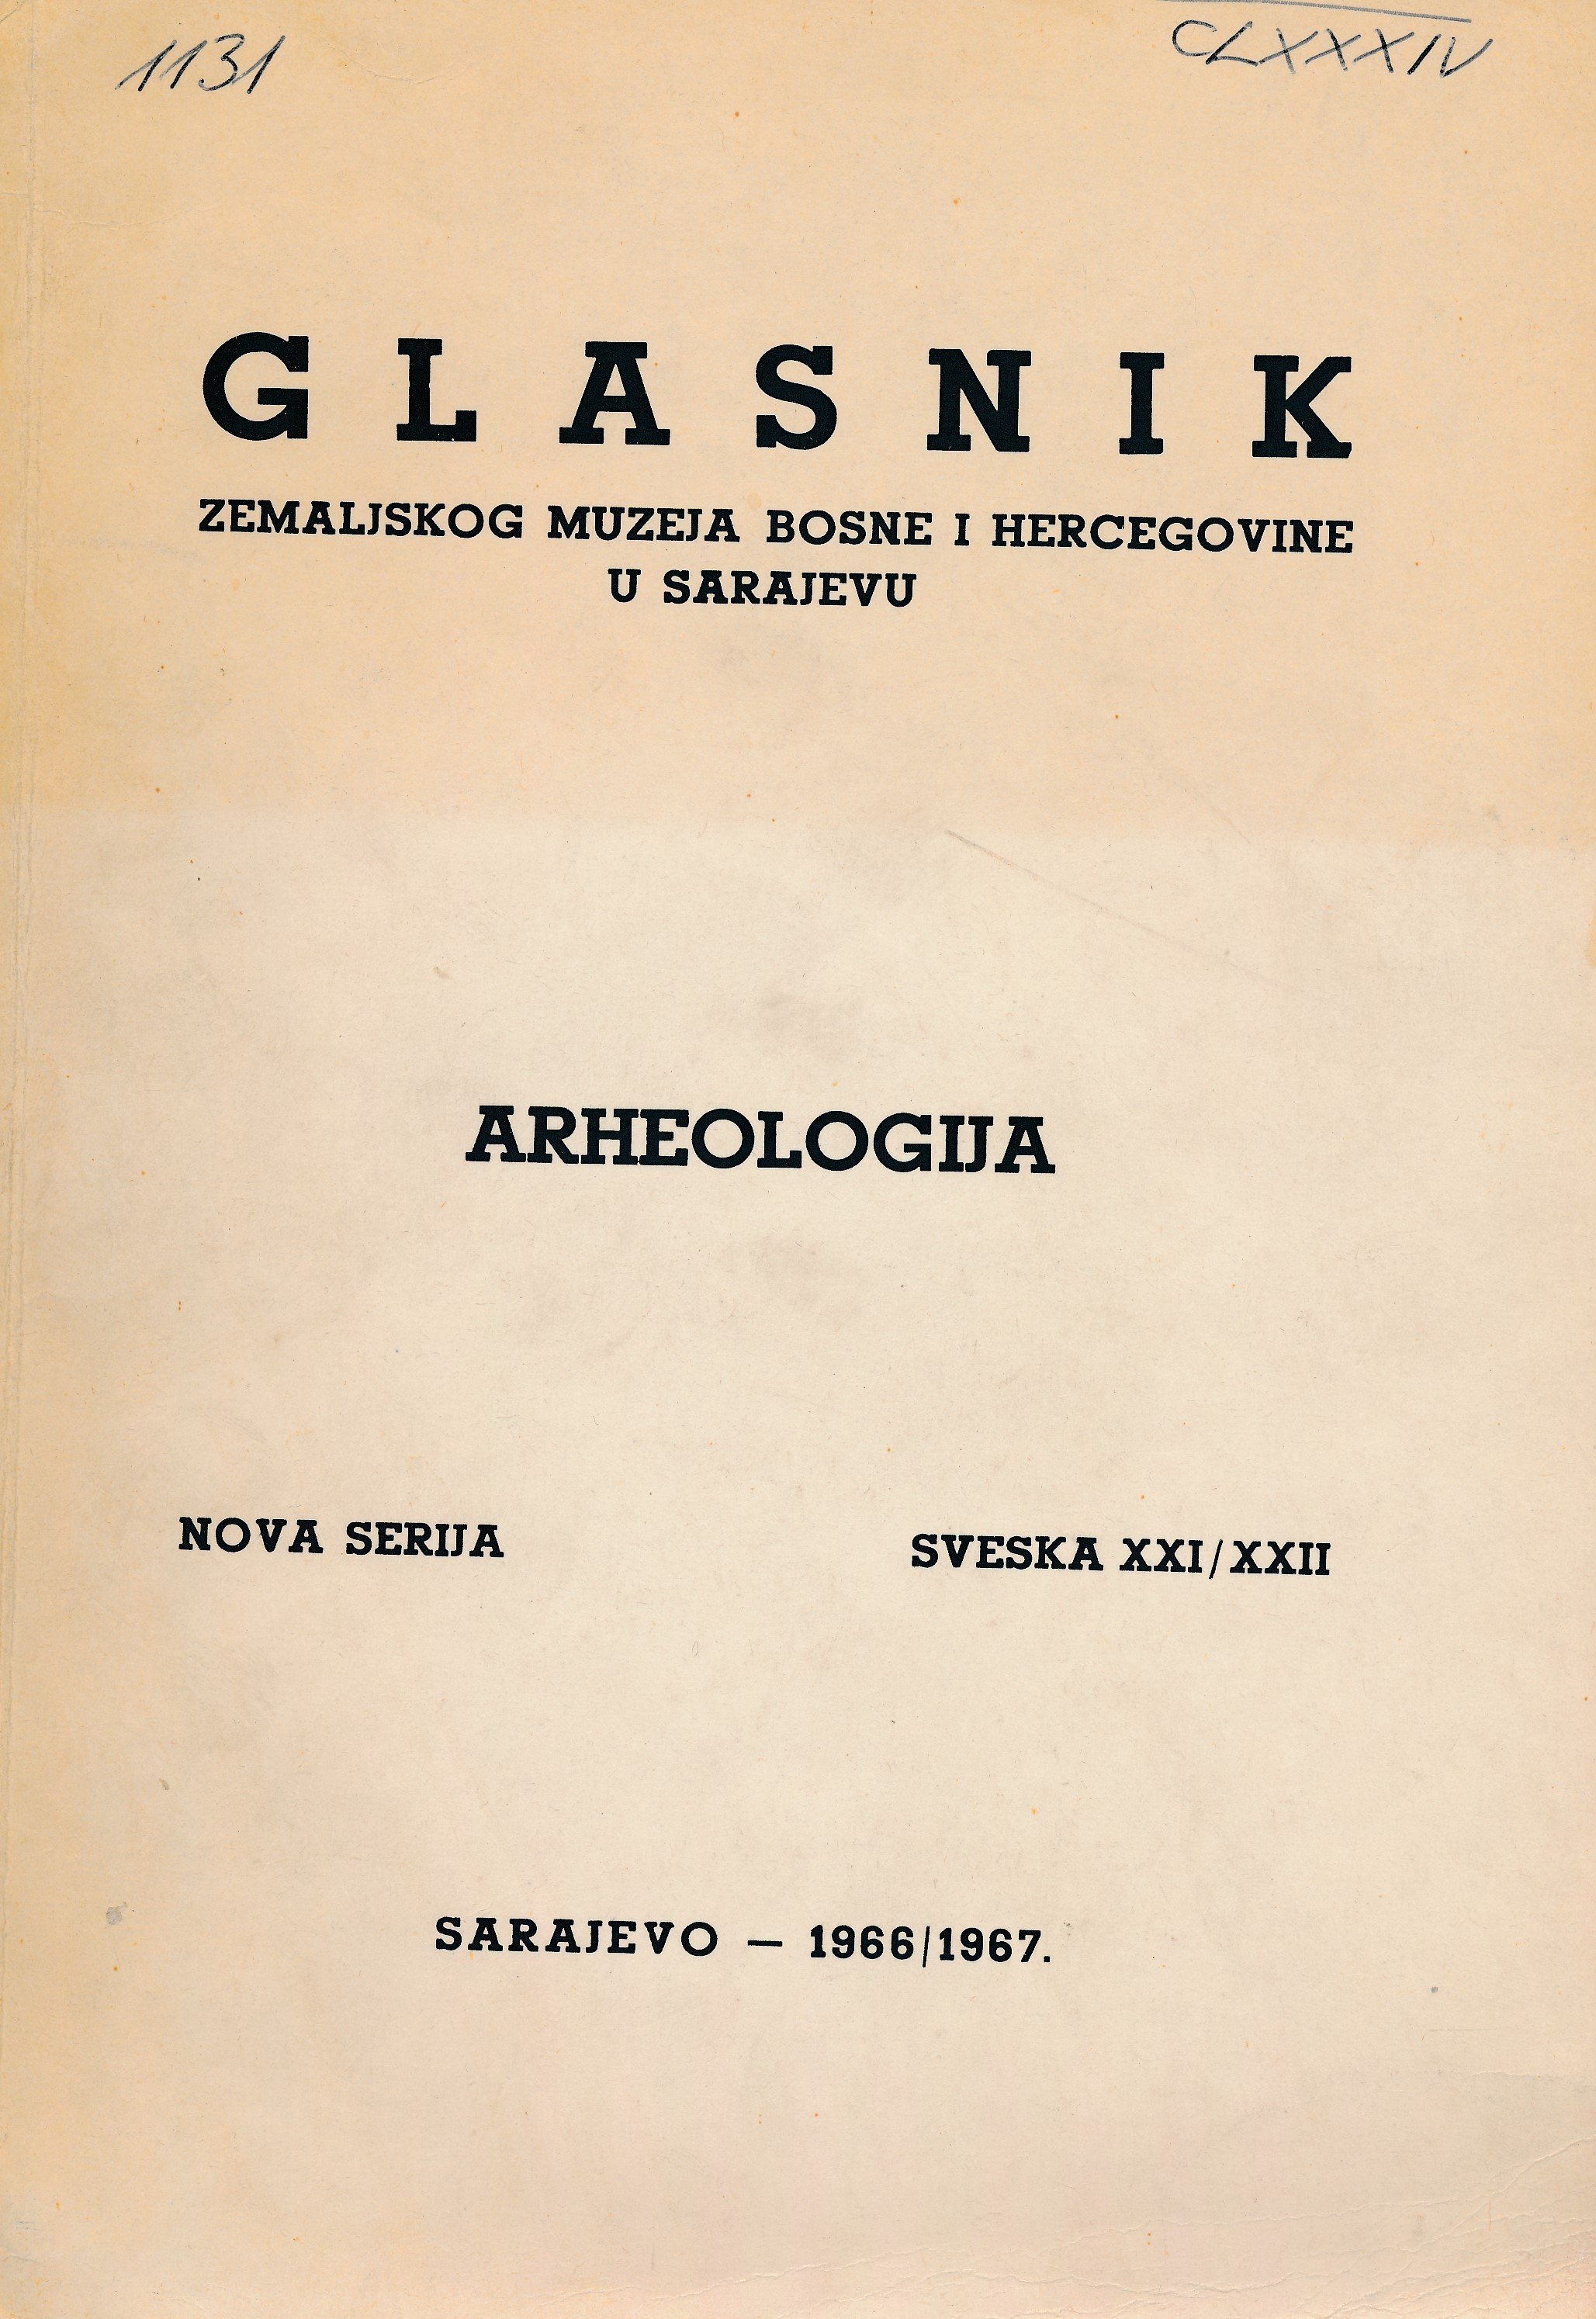 Glasnik 1966 - 1967 (Erkel Ferenc Múzeum és Könyvtár, Gyula CC BY-NC-SA)